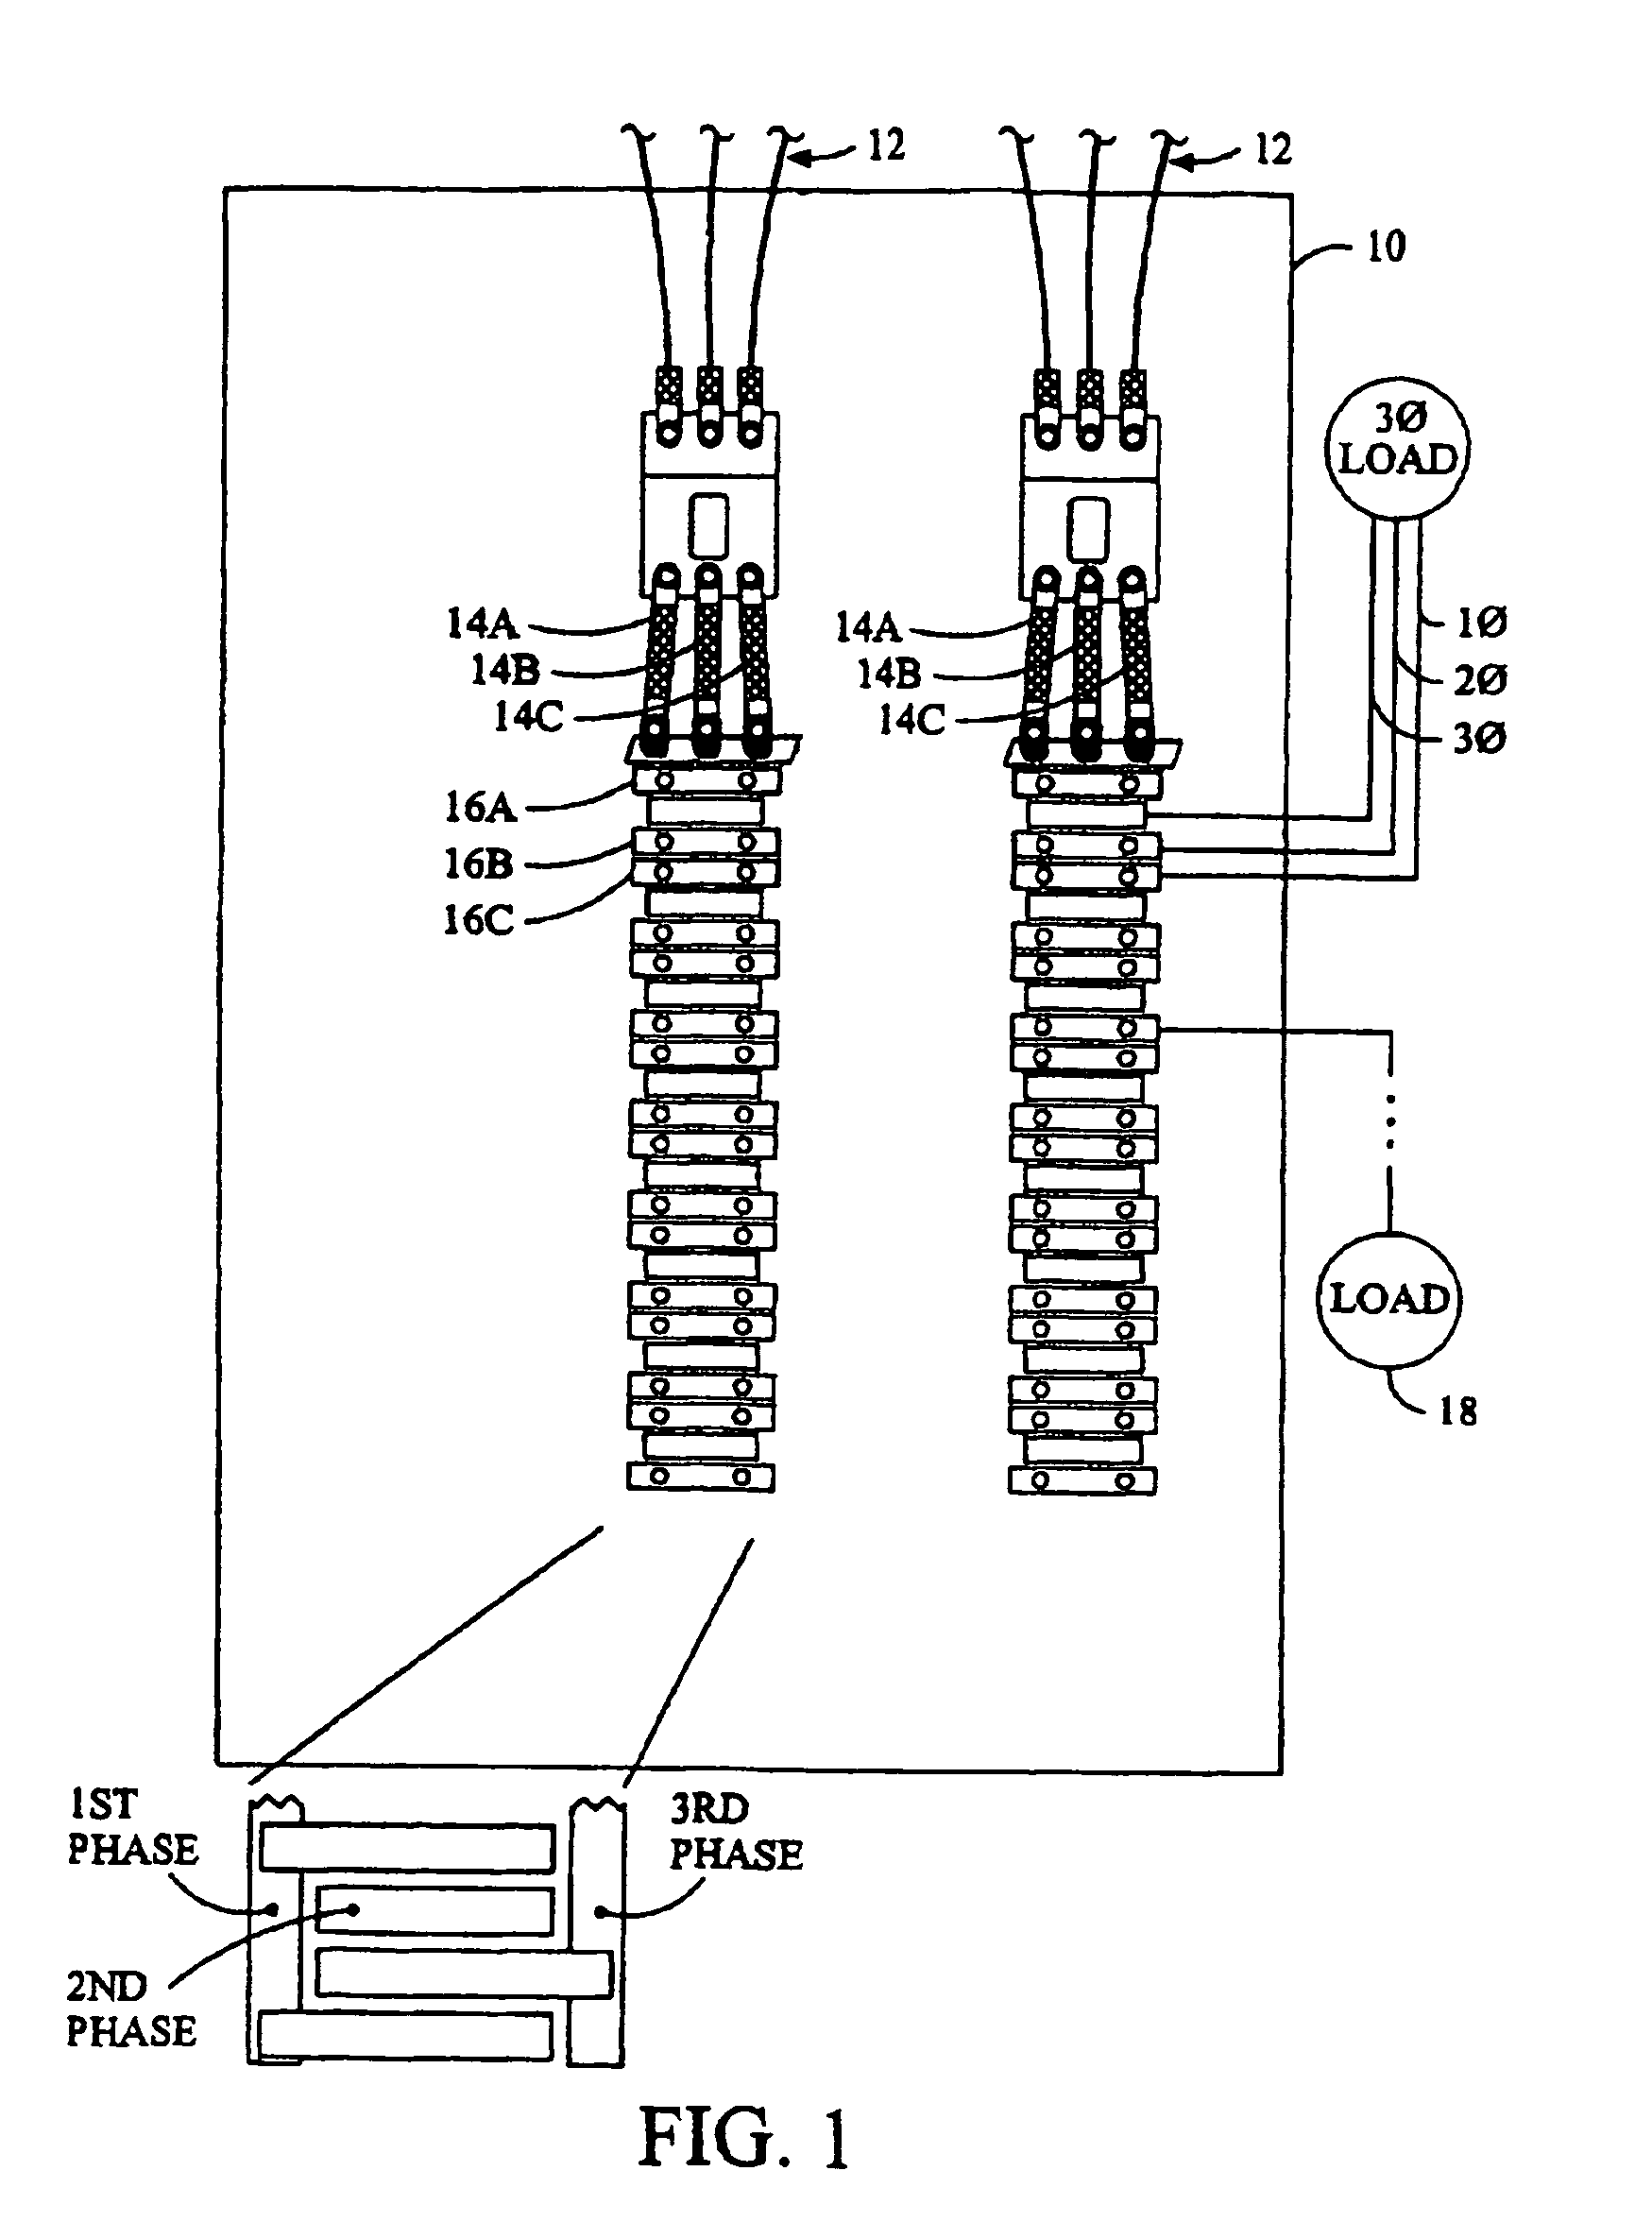 Branch meter with configurable sensor strip arrangement